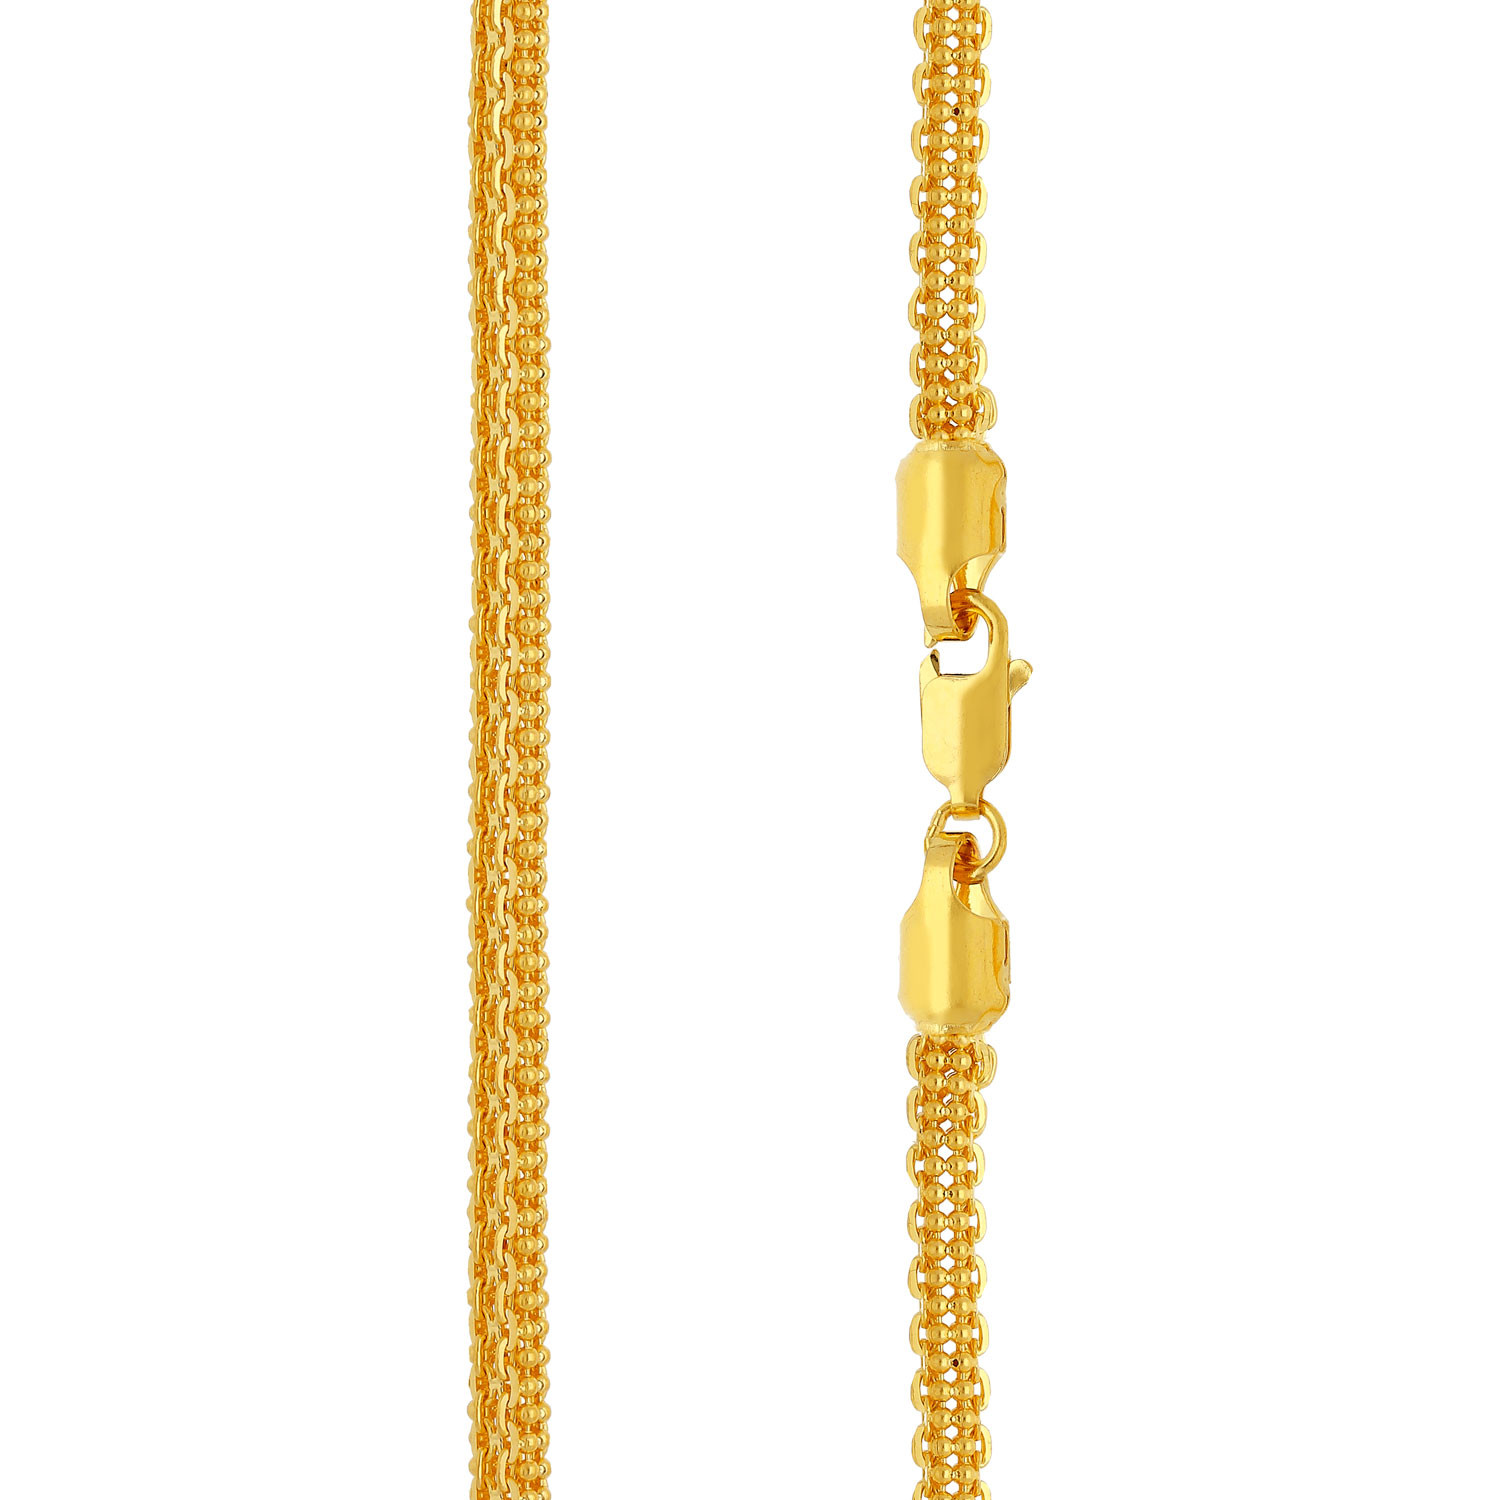 Malabar Gold Chain USAICHPTN40P75